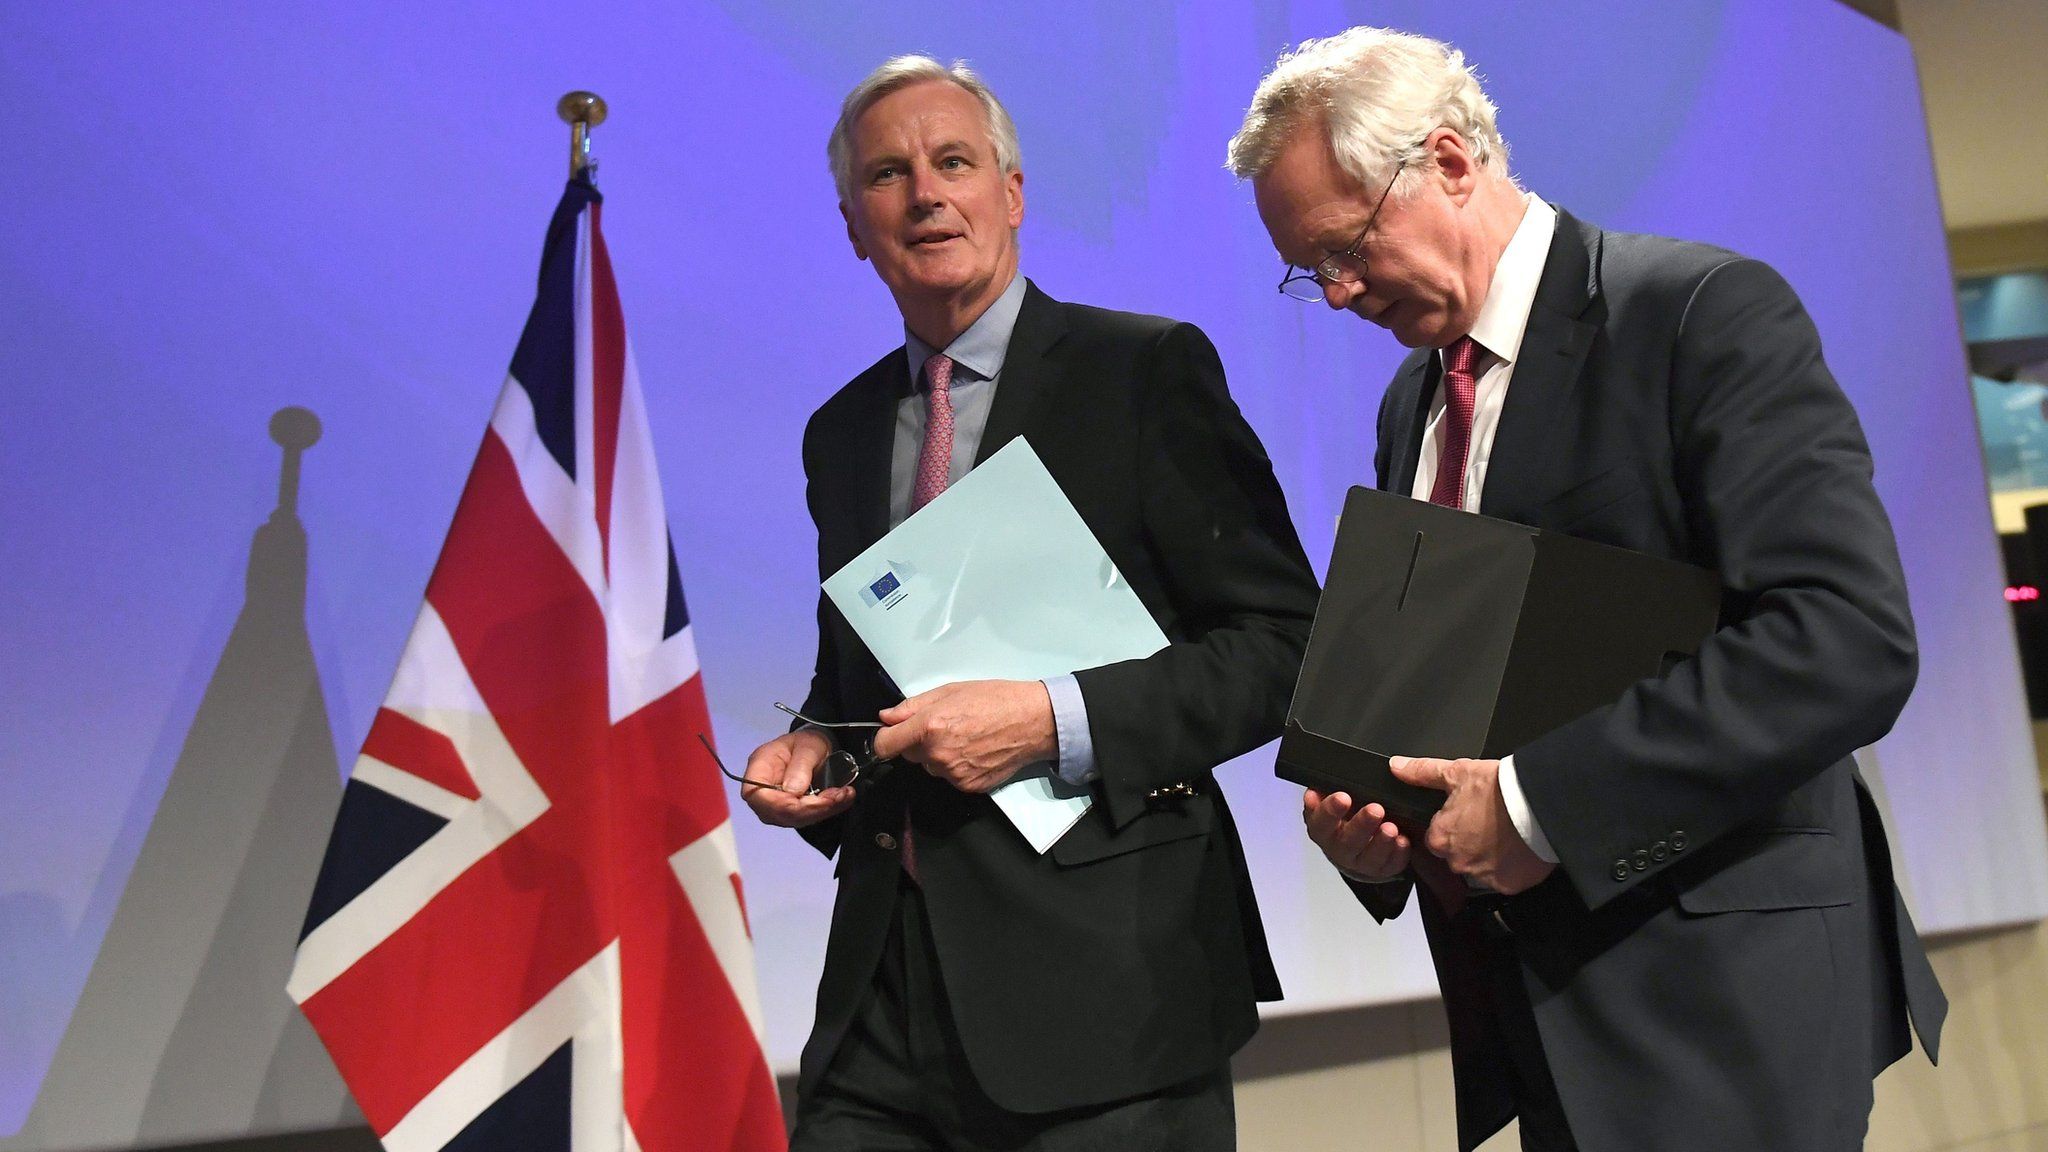 Barnier and Davis